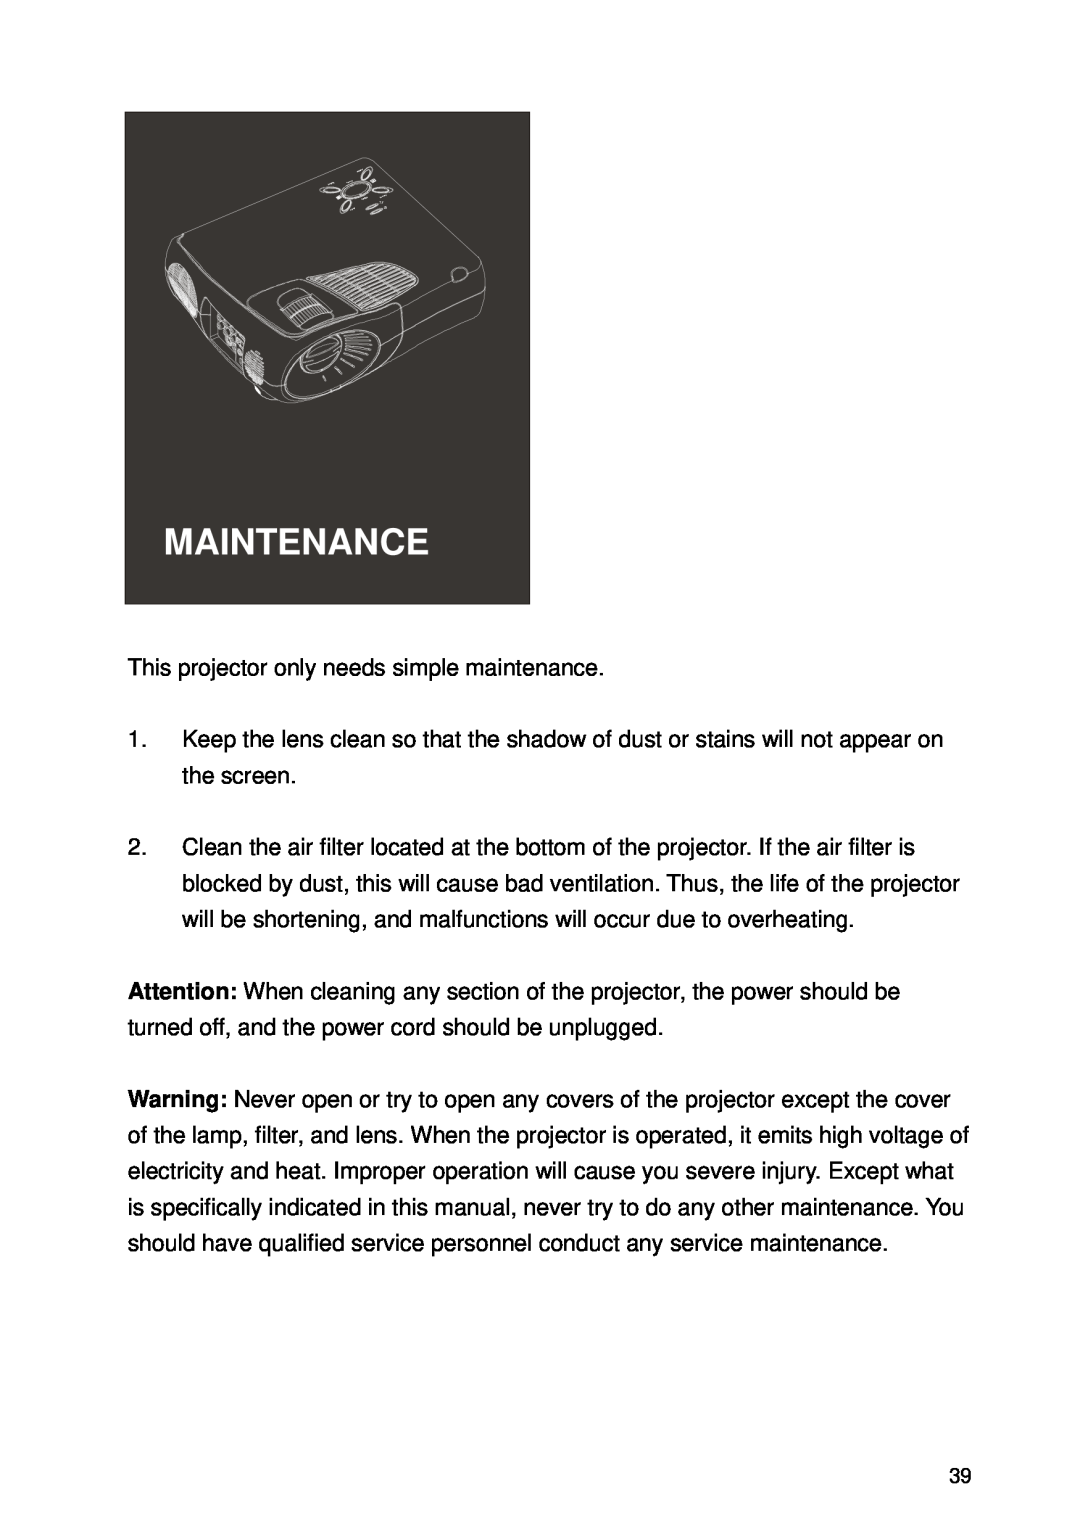 Microtek CX4 manual Maintenance 